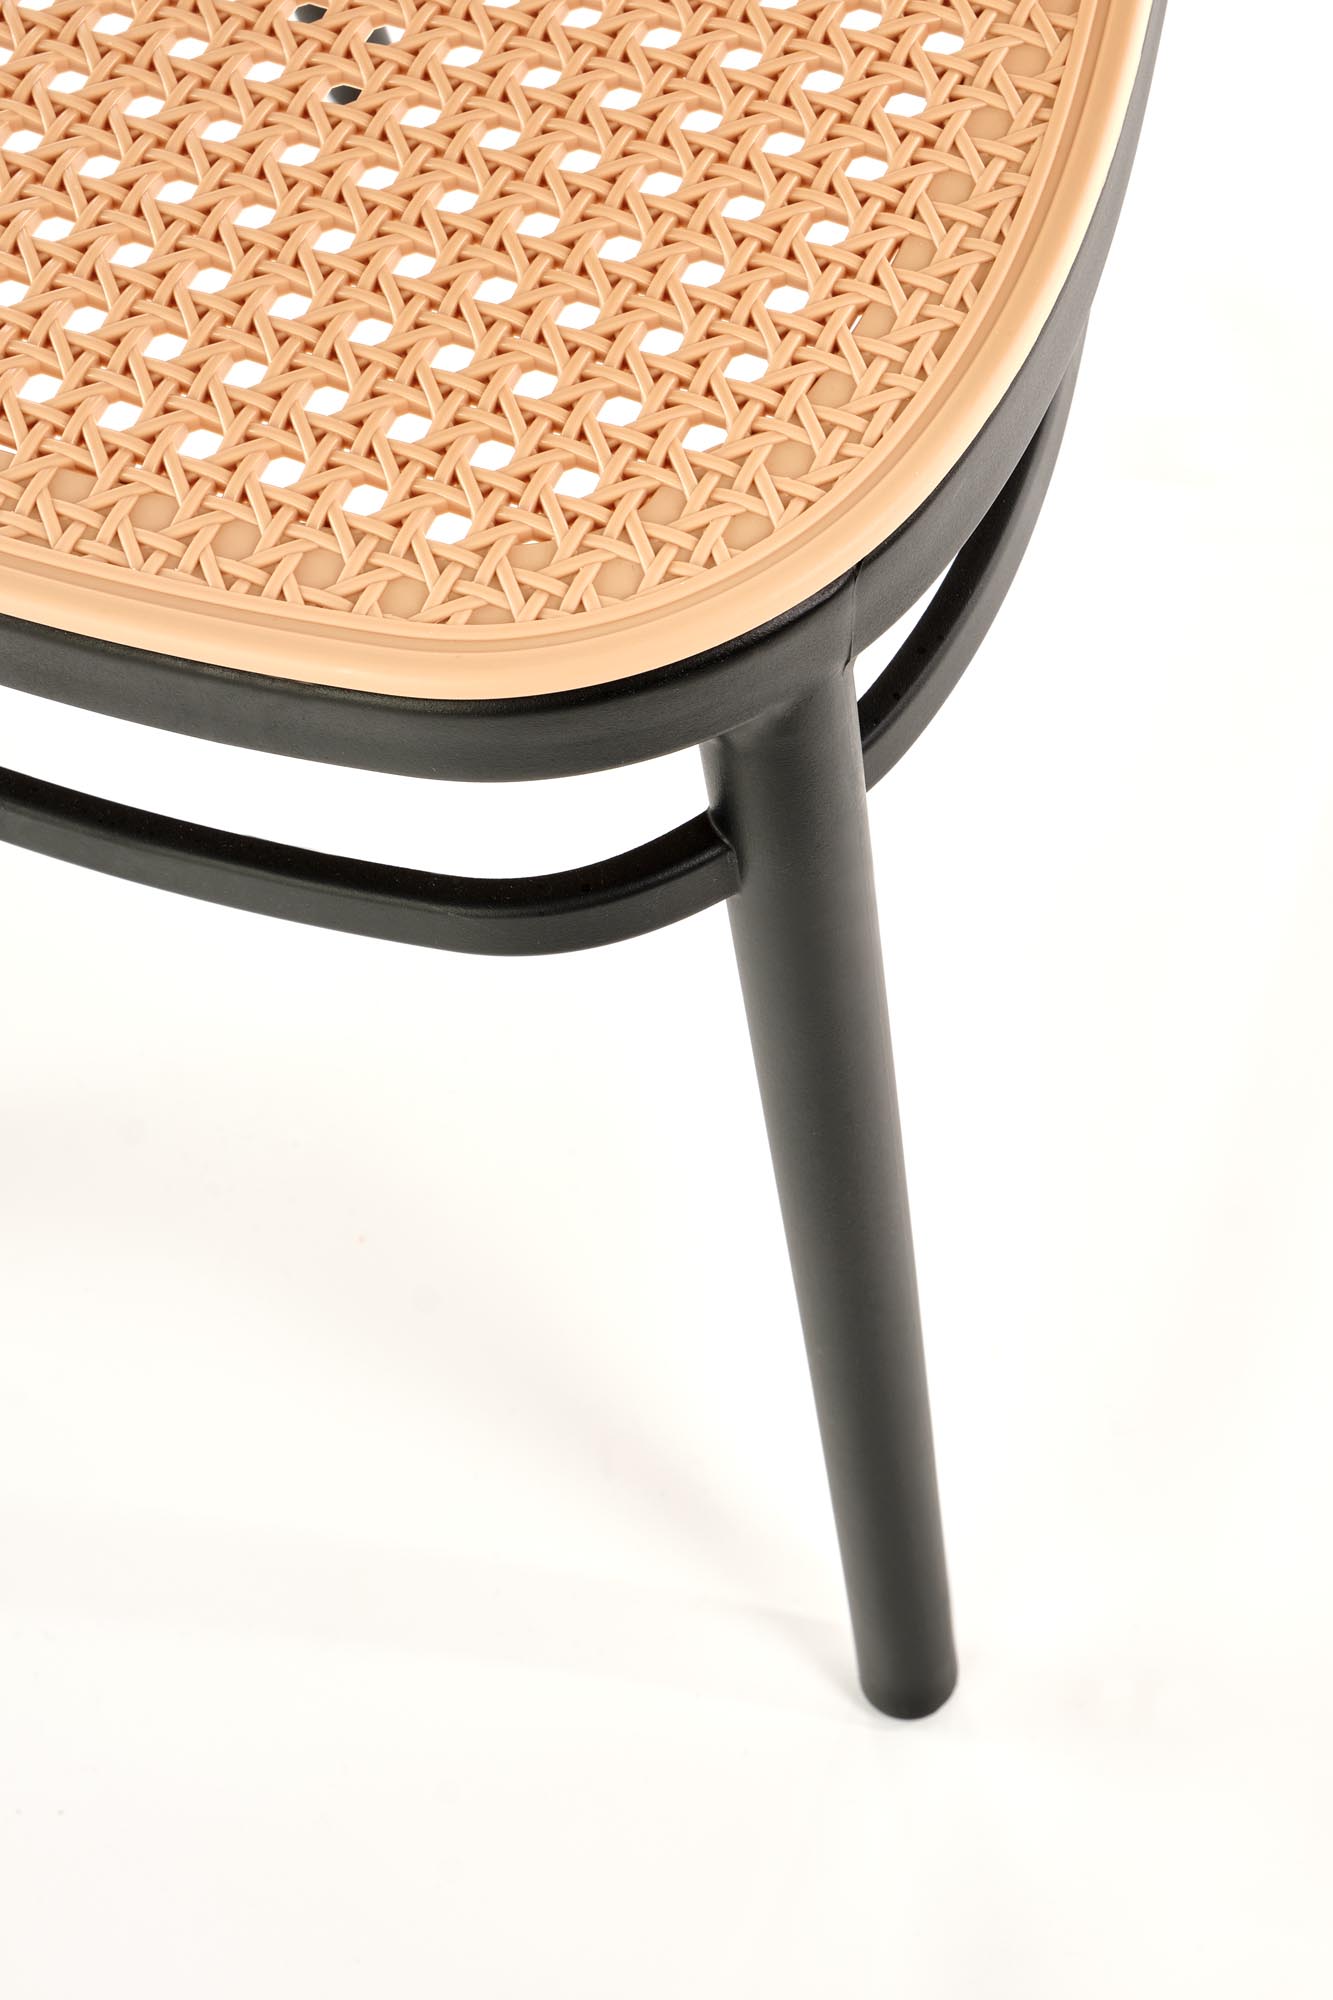 K483 szék - natúr/fekete k483 Židle přírodní/Fekete